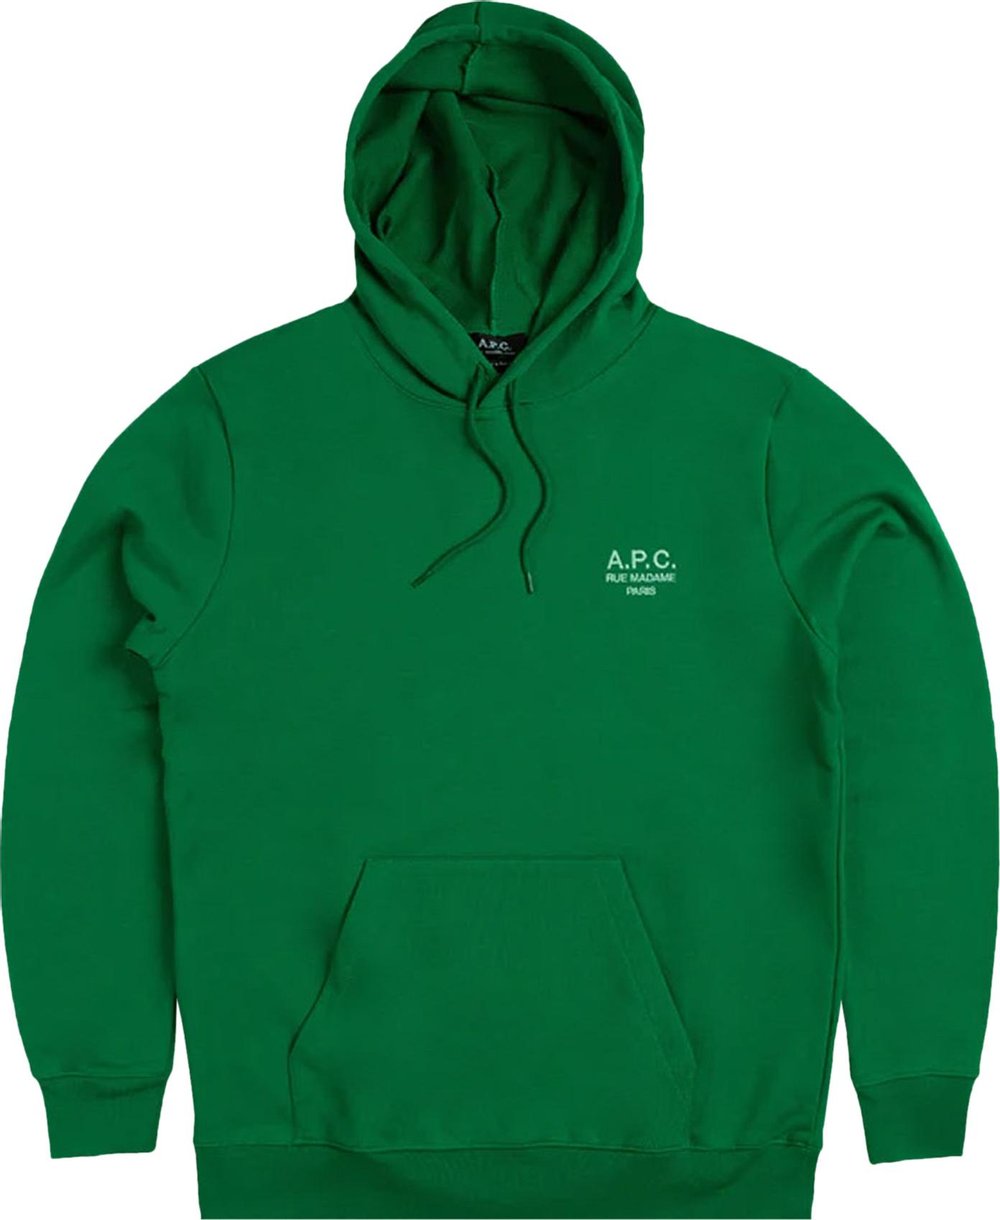 Buy A.P.C. Marvin Hoodie 'Vert' - COEZD H27733 VERT - Green | GOAT UK